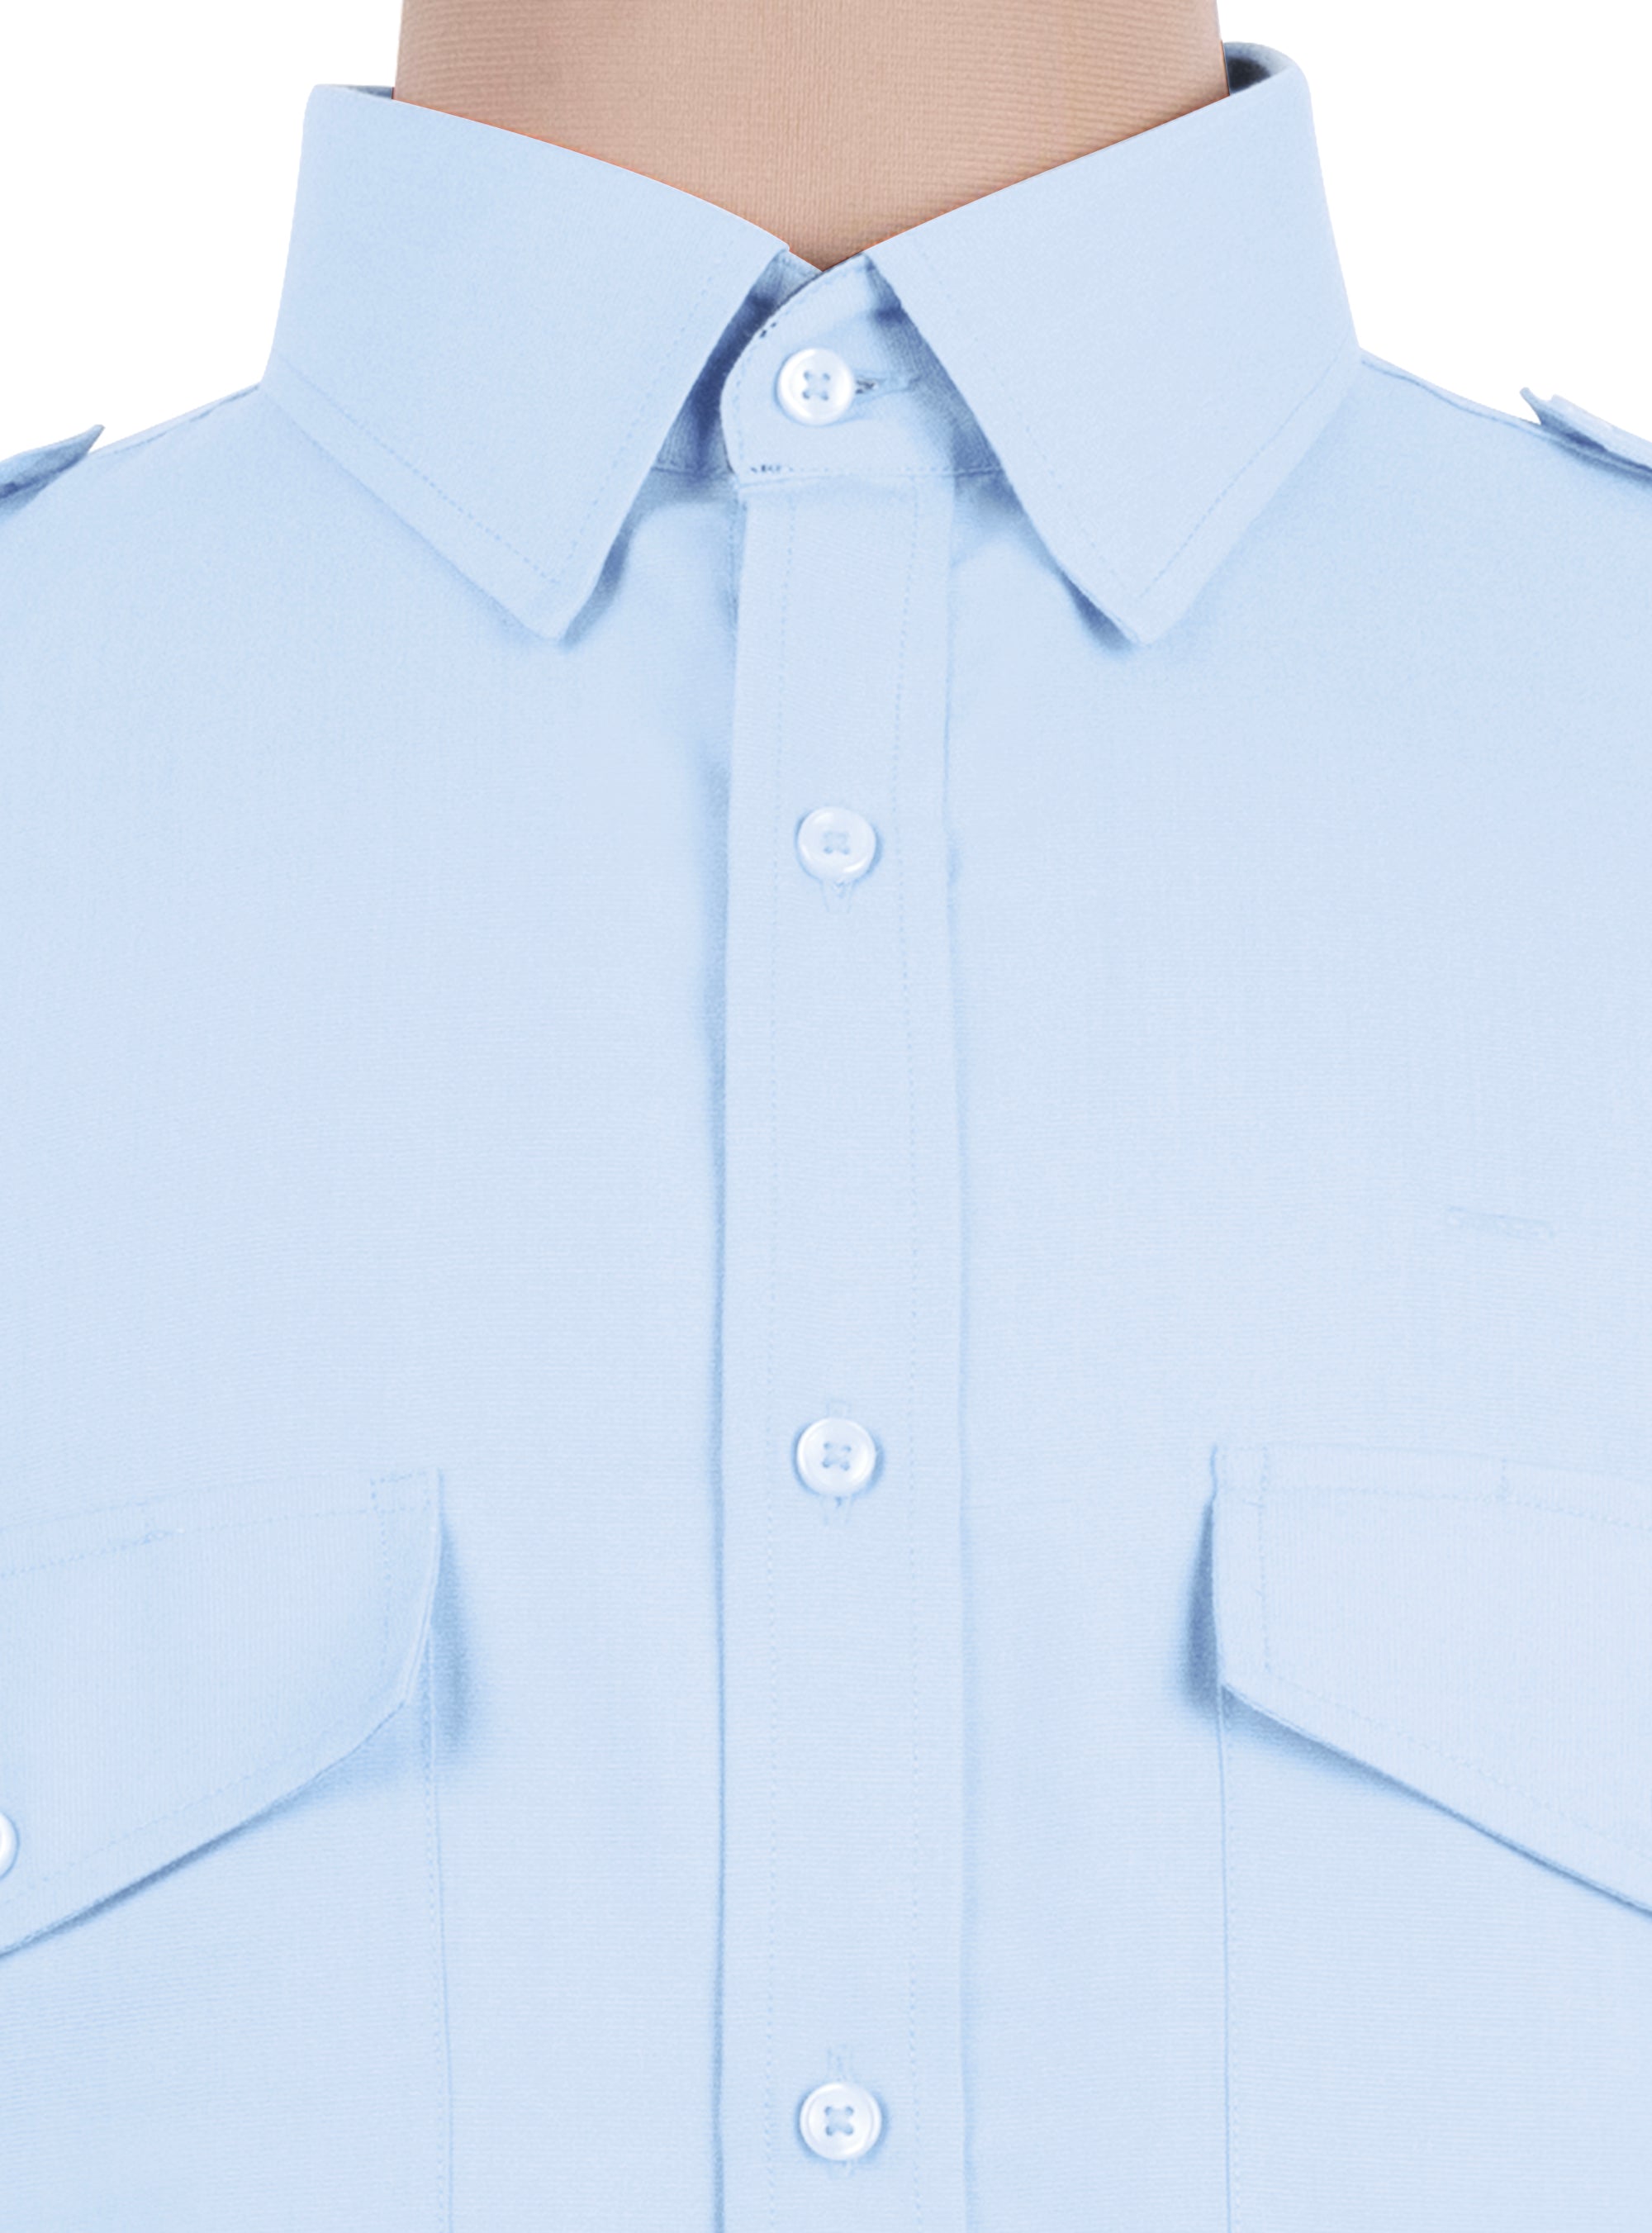 Blue Polycotton ln-Stock Pilot Shirt Men